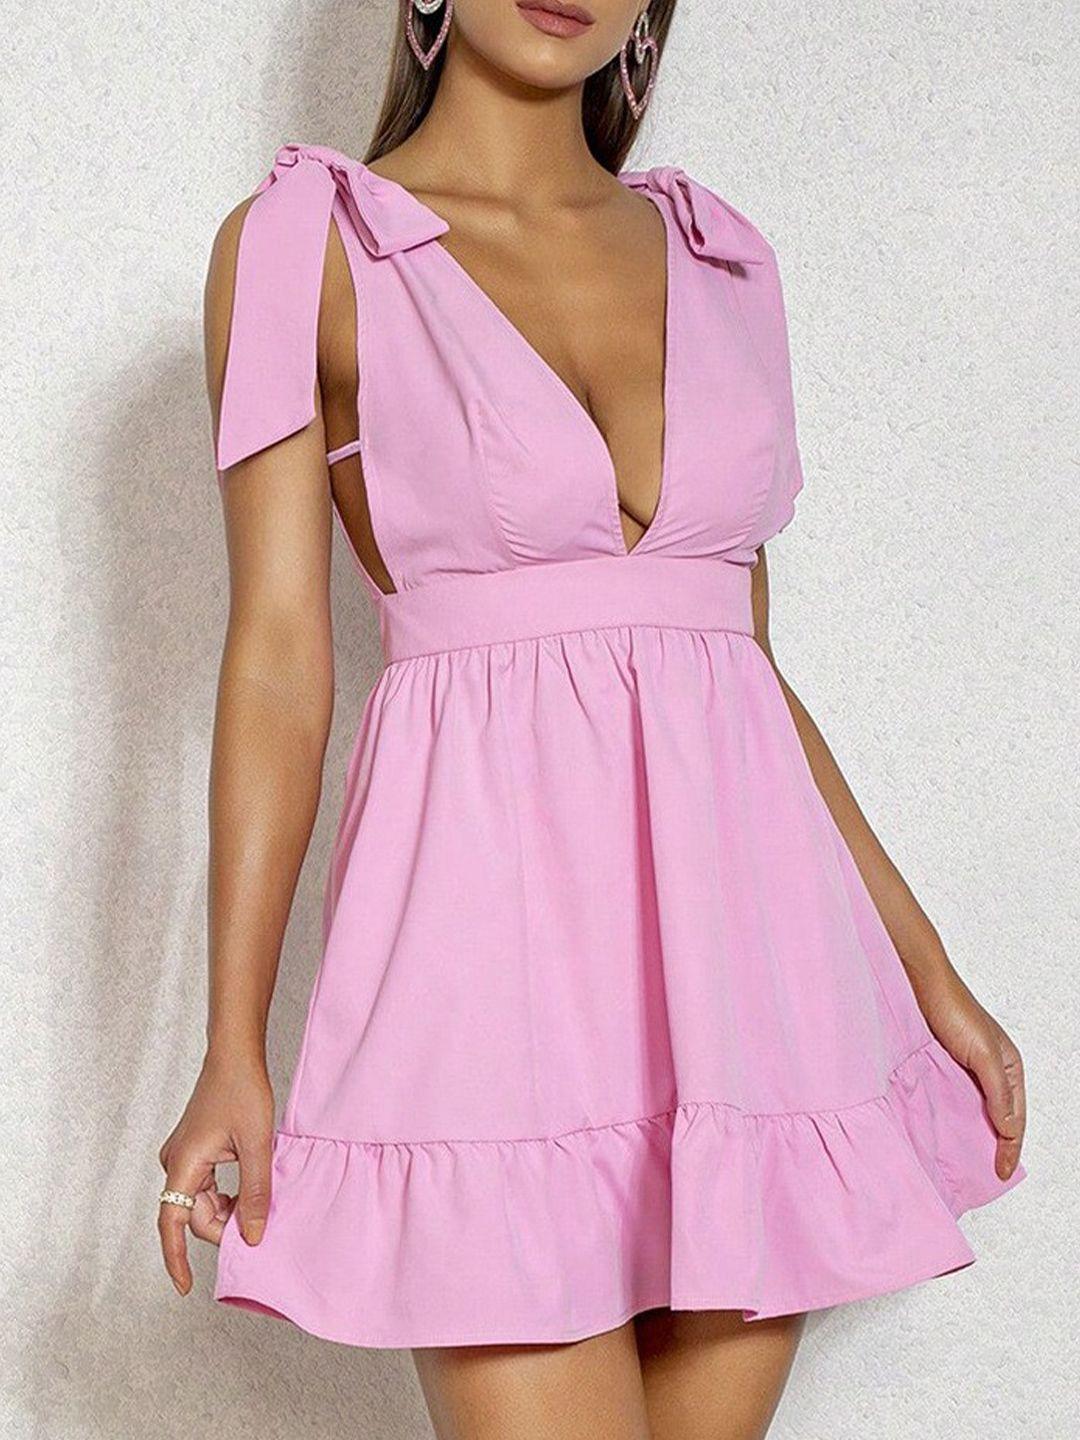 stylecast pink v-neck fit & flare mini dress